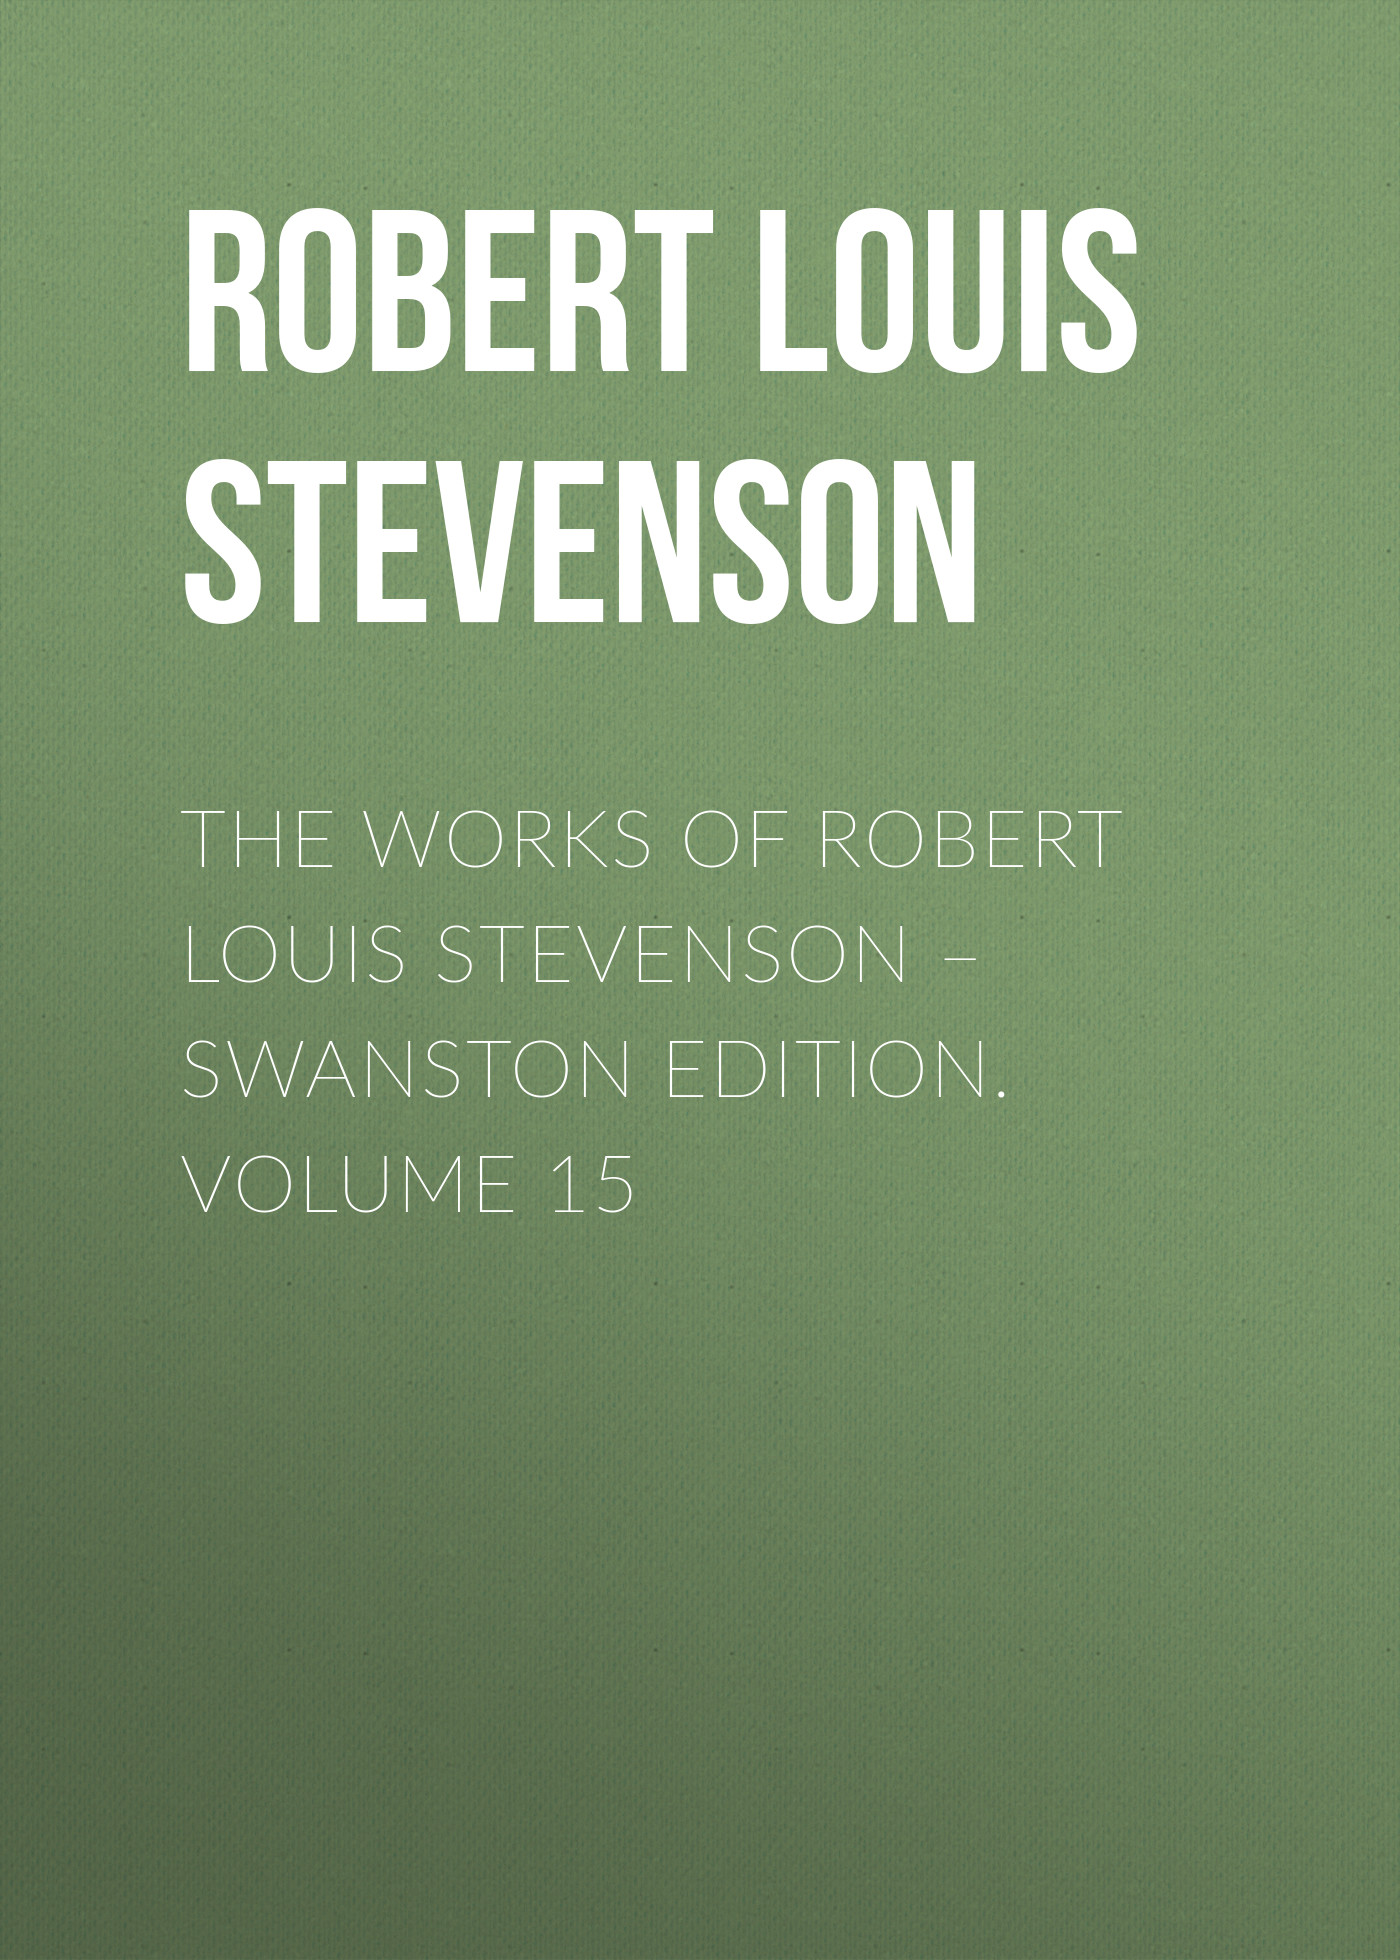 Книга The Works of Robert Louis Stevenson – Swanston Edition. Volume 15 из серии , созданная Robert Stevenson, может относится к жанру Иностранные языки, Зарубежная классика. Стоимость электронной книги The Works of Robert Louis Stevenson – Swanston Edition. Volume 15 с идентификатором 23153395 составляет 0.90 руб.